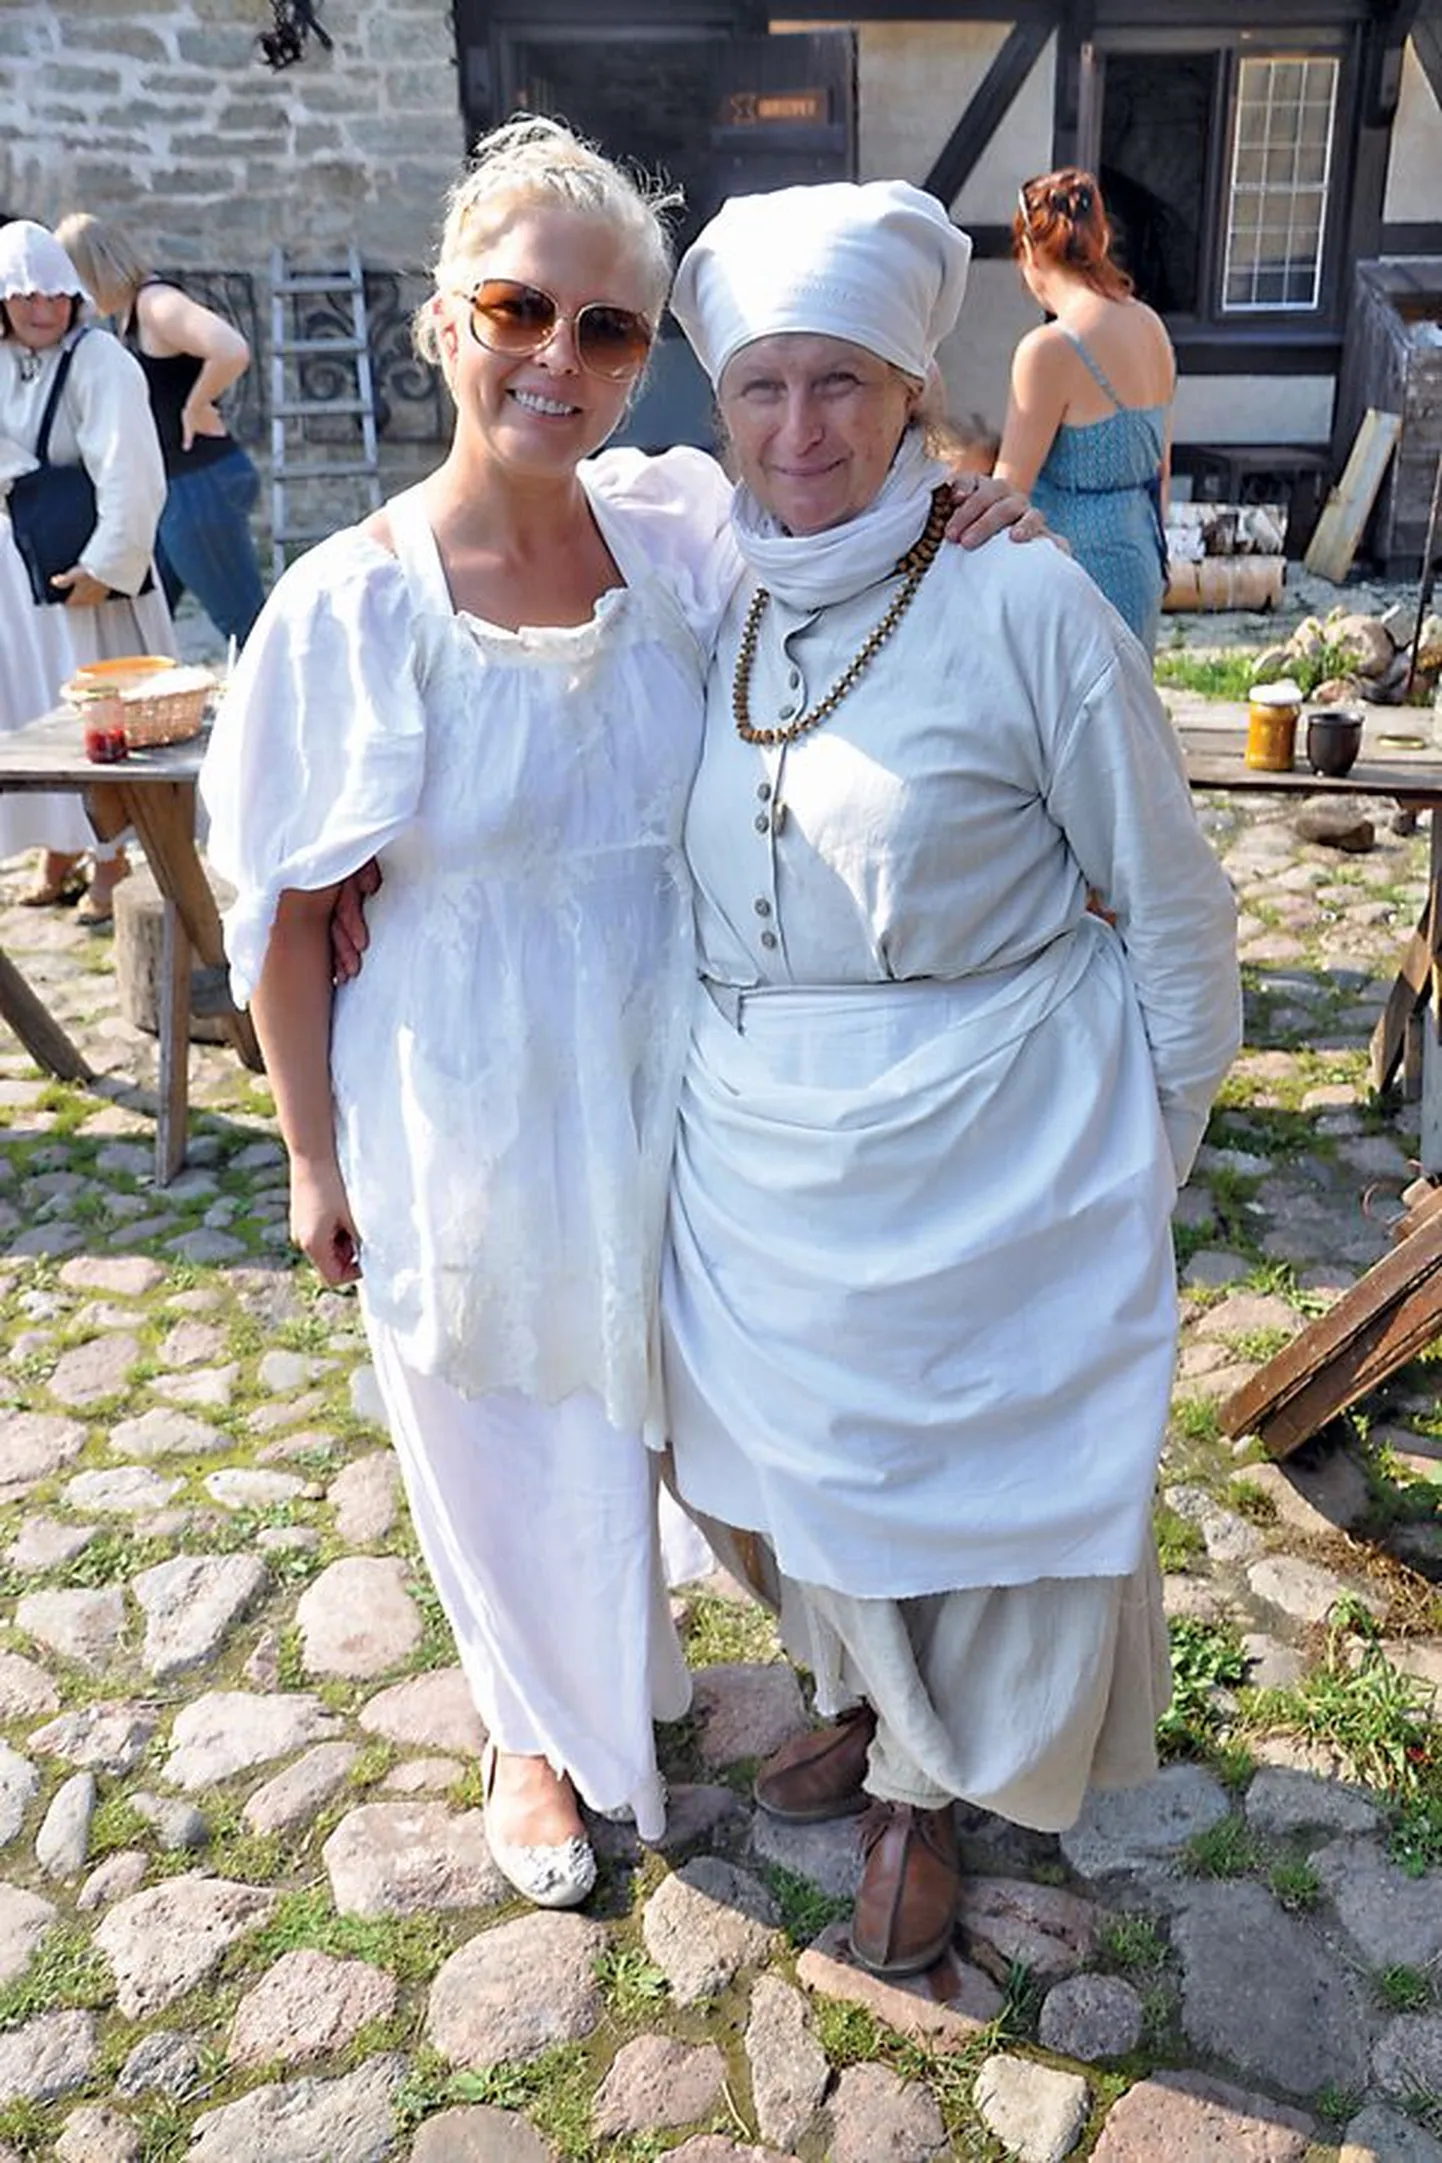 Каждый год фестиваль заготовок в Нарве посещают известные люди. На фото: супруга президента Эстонии Эвелин Ильвес и сотрудница Северного двора Нарвского замка Валентина Киршнер на фестивале «Лето в банку» в 2011 году.